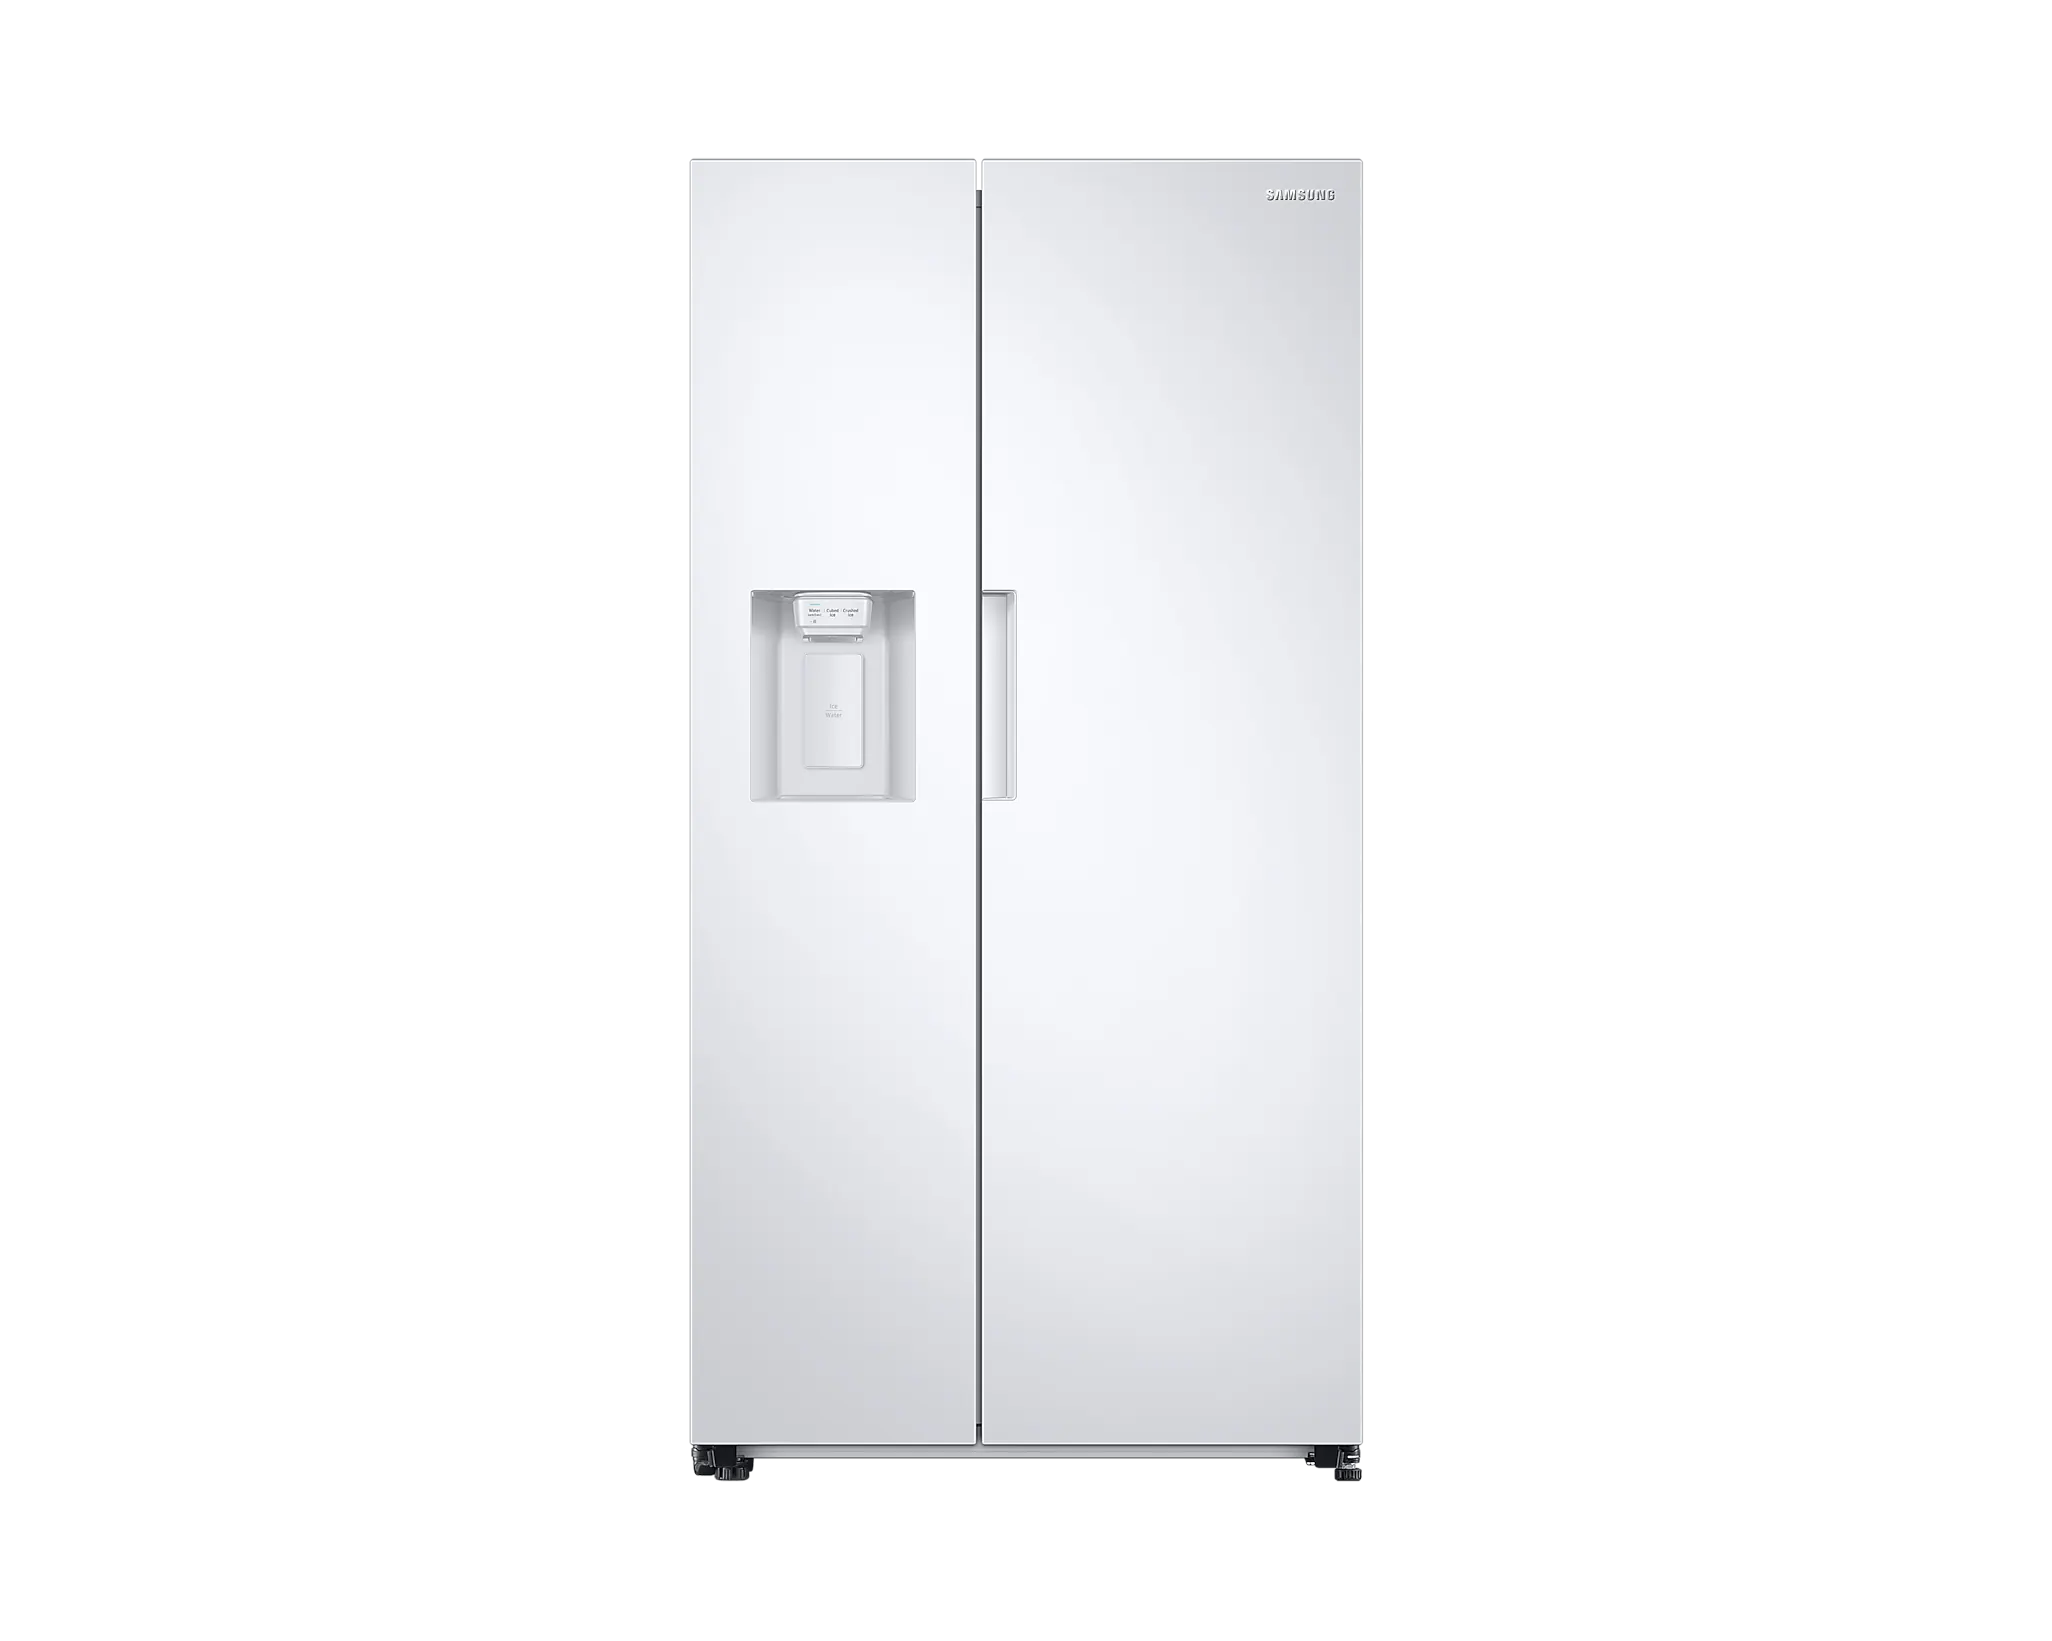 Réfrigérateur Américain avec tiroirs SAMSUNG RF23M8090SG achat à prix  discount chez